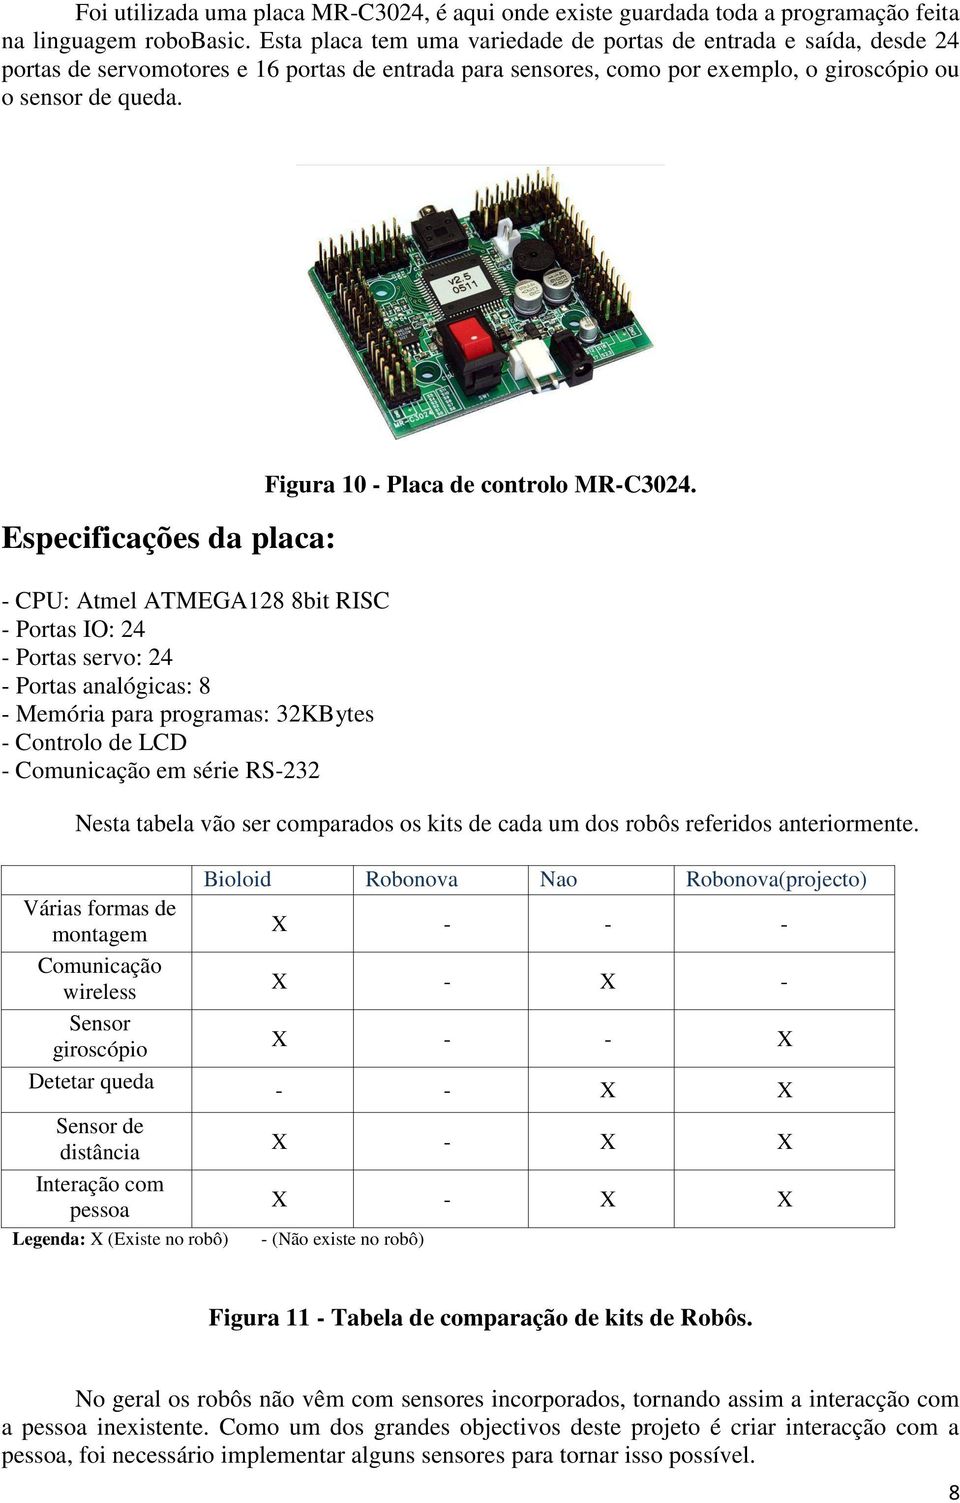 Especificações da placa: - CPU: Atmel ATMEGA128 8bit RISC - Portas IO: 24 - Portas servo: 24 - Portas analógicas: 8 - Memória para programas: 32KBytes - Controlo de LCD - Comunicação em série RS-232